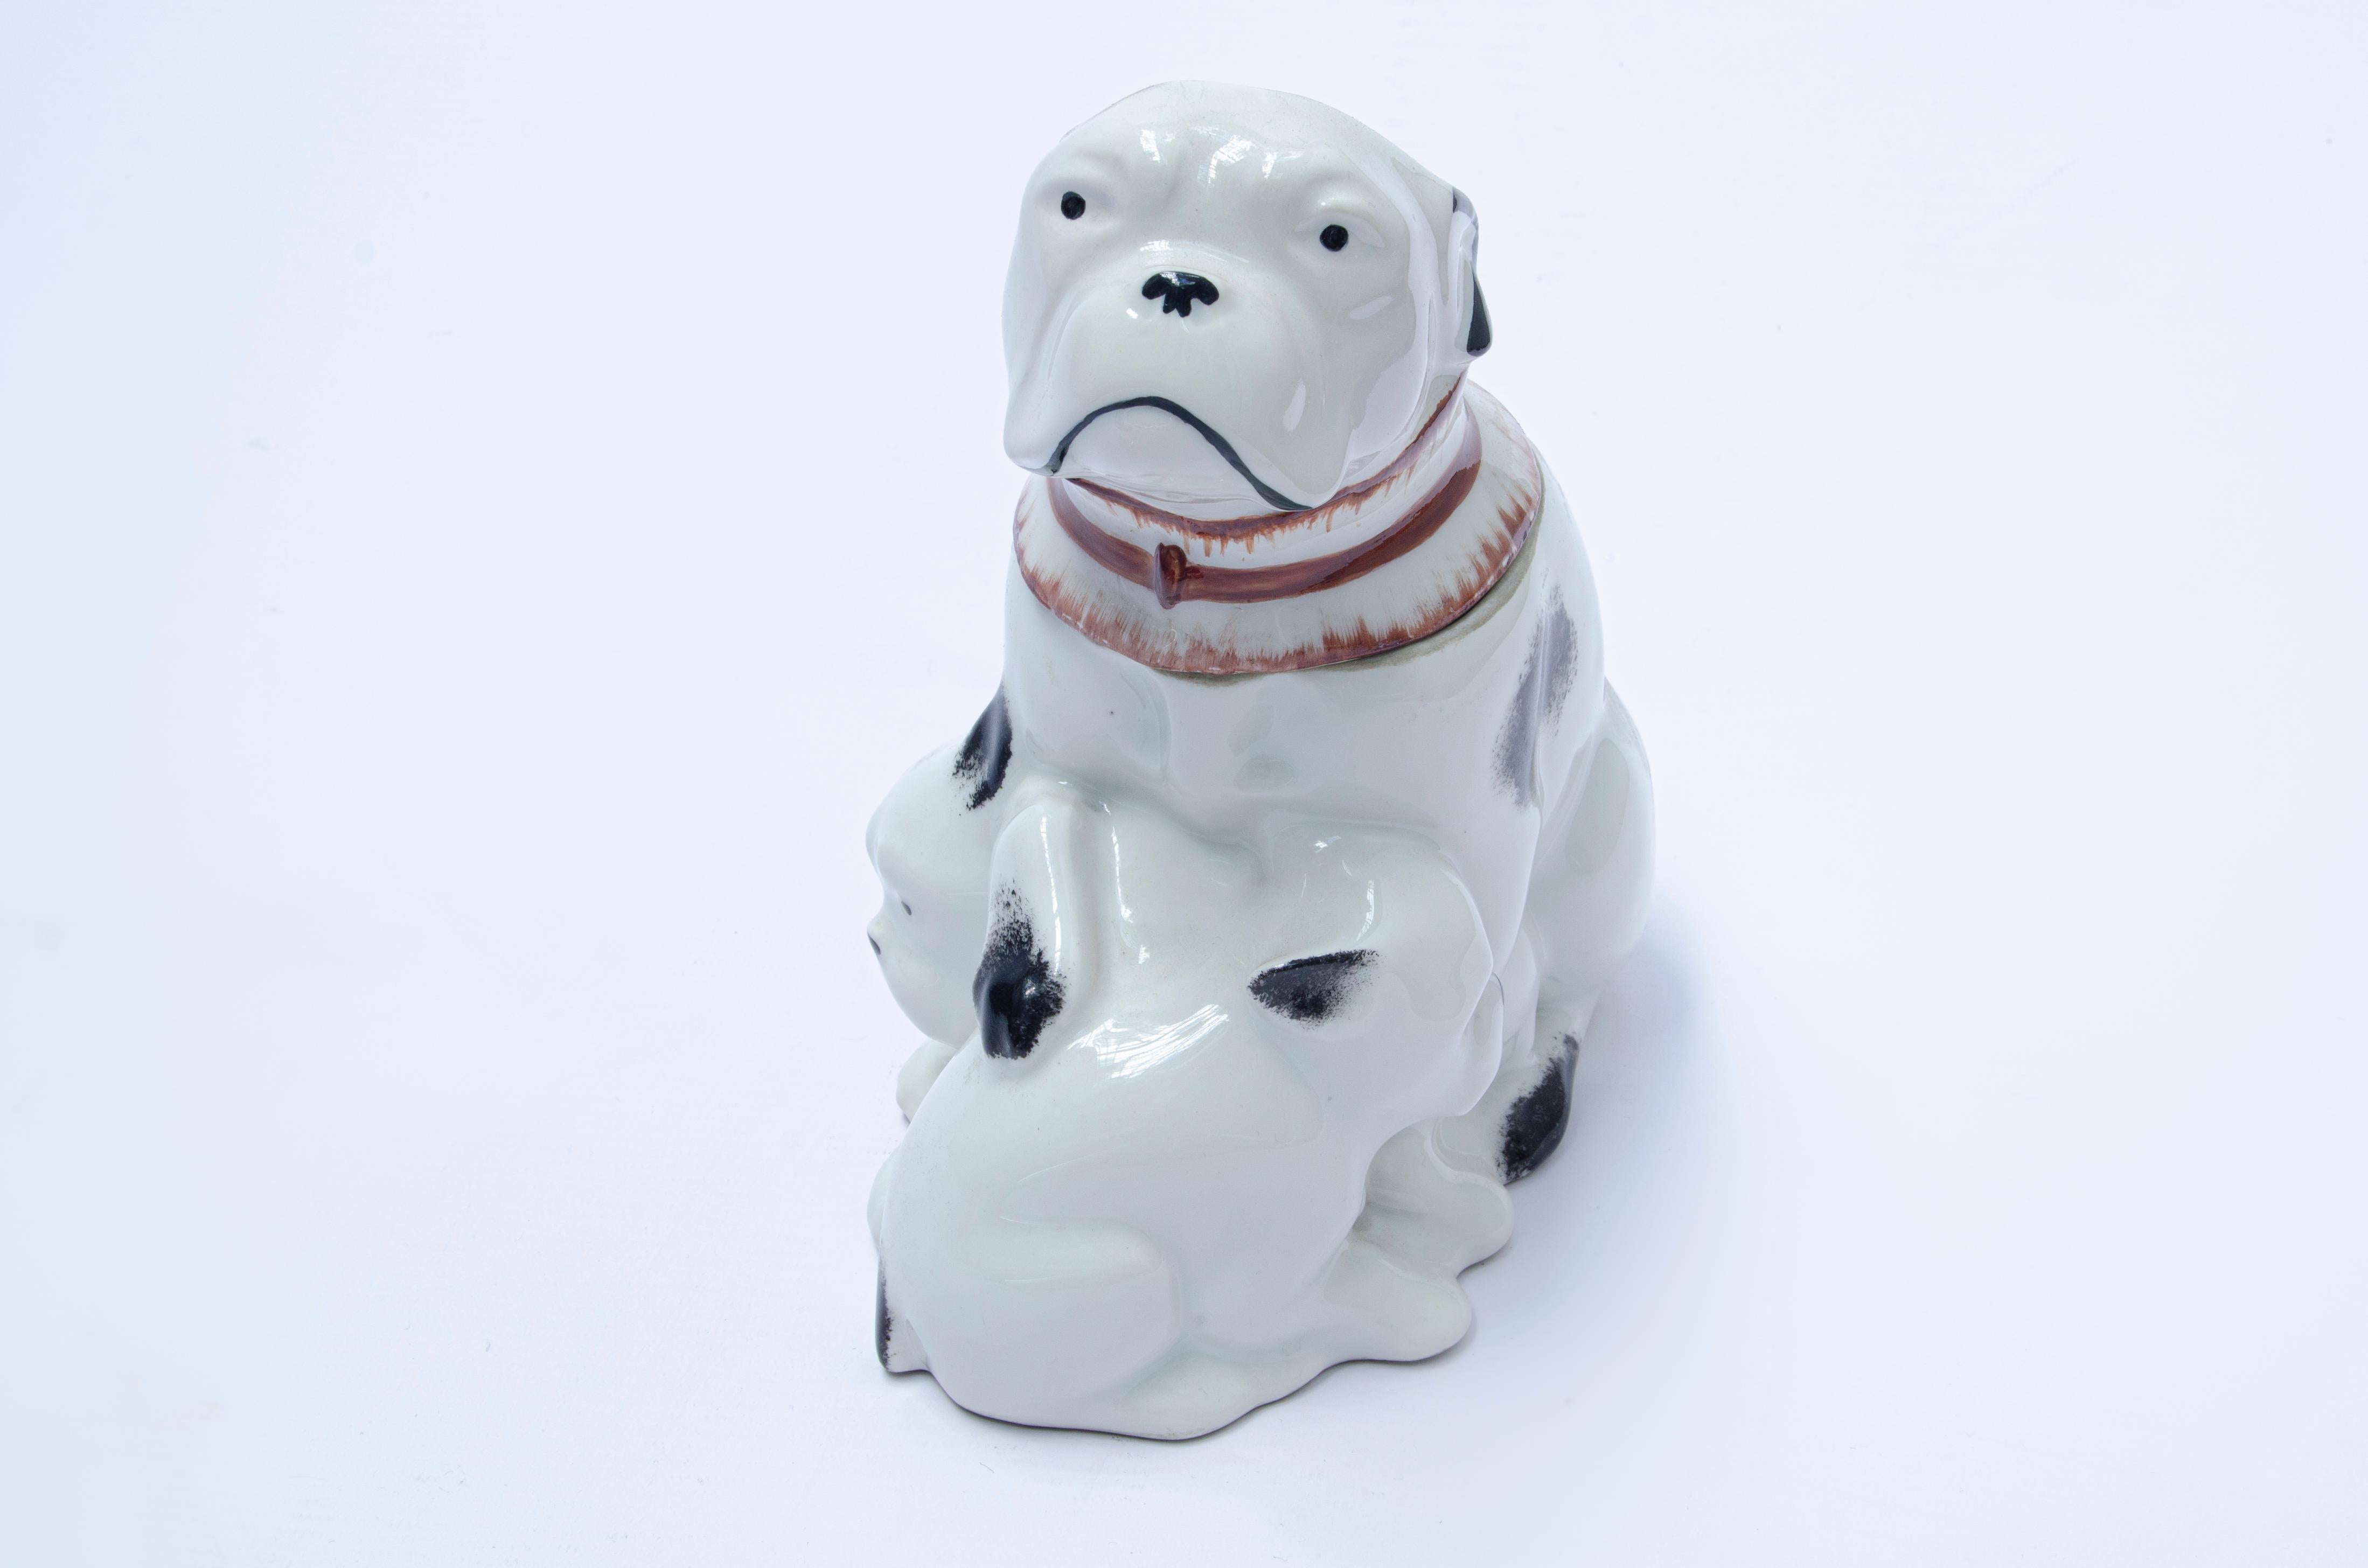 Bonbondose für Hunde von Edouard Marcel Sandoz (1881-1971), hergestellt von Haviland.

Wapler, Jacques-Ph. (1999) 